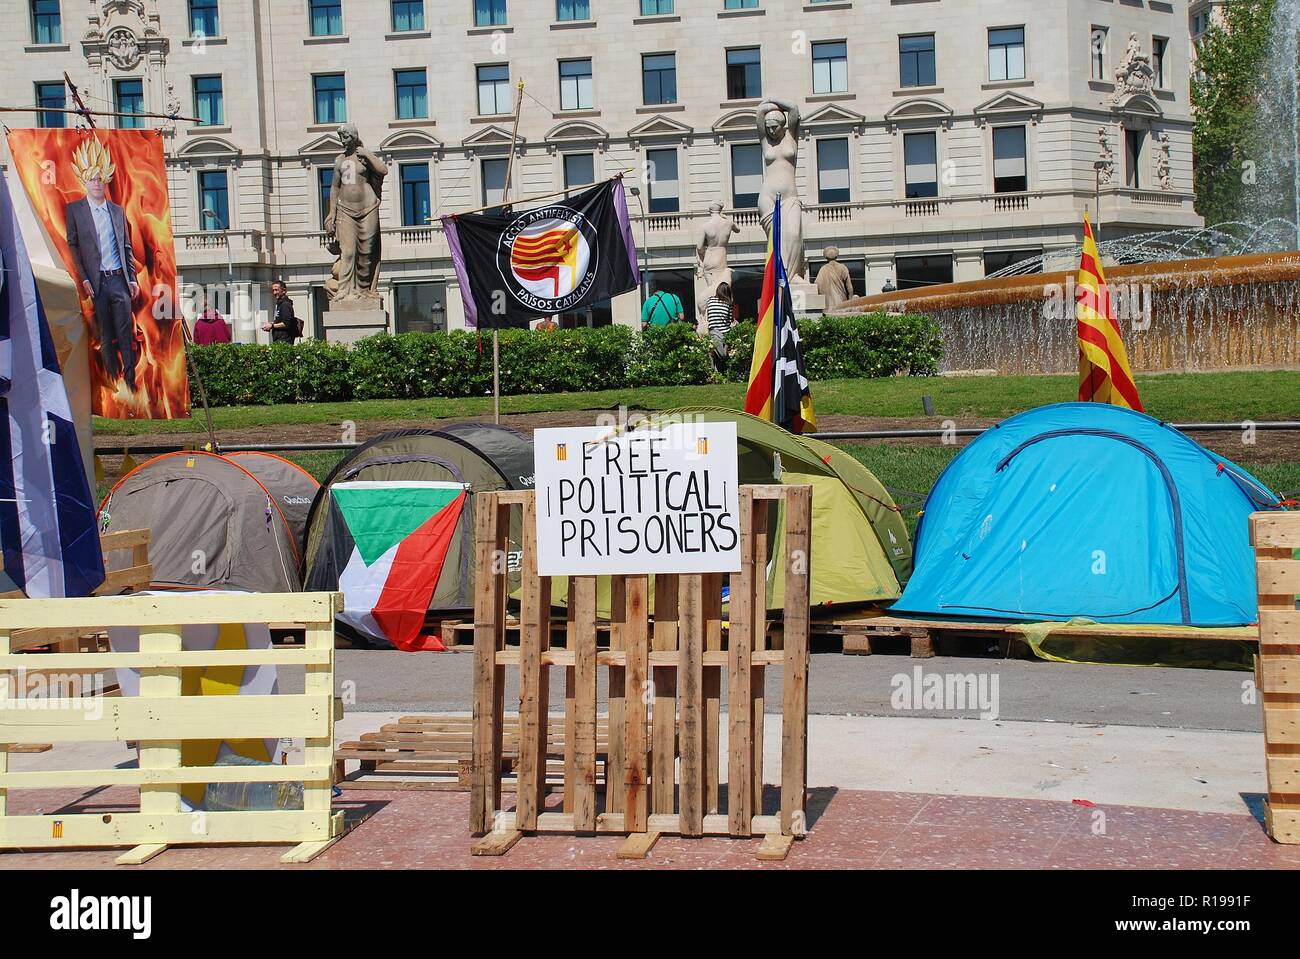 Aktivisten für die llibertat Presos Politik (politische Gefangene) Bewegung Kampagne in der Plaza Catalunya in Barcelona, Spanien am 17. April 2018. Stockfoto